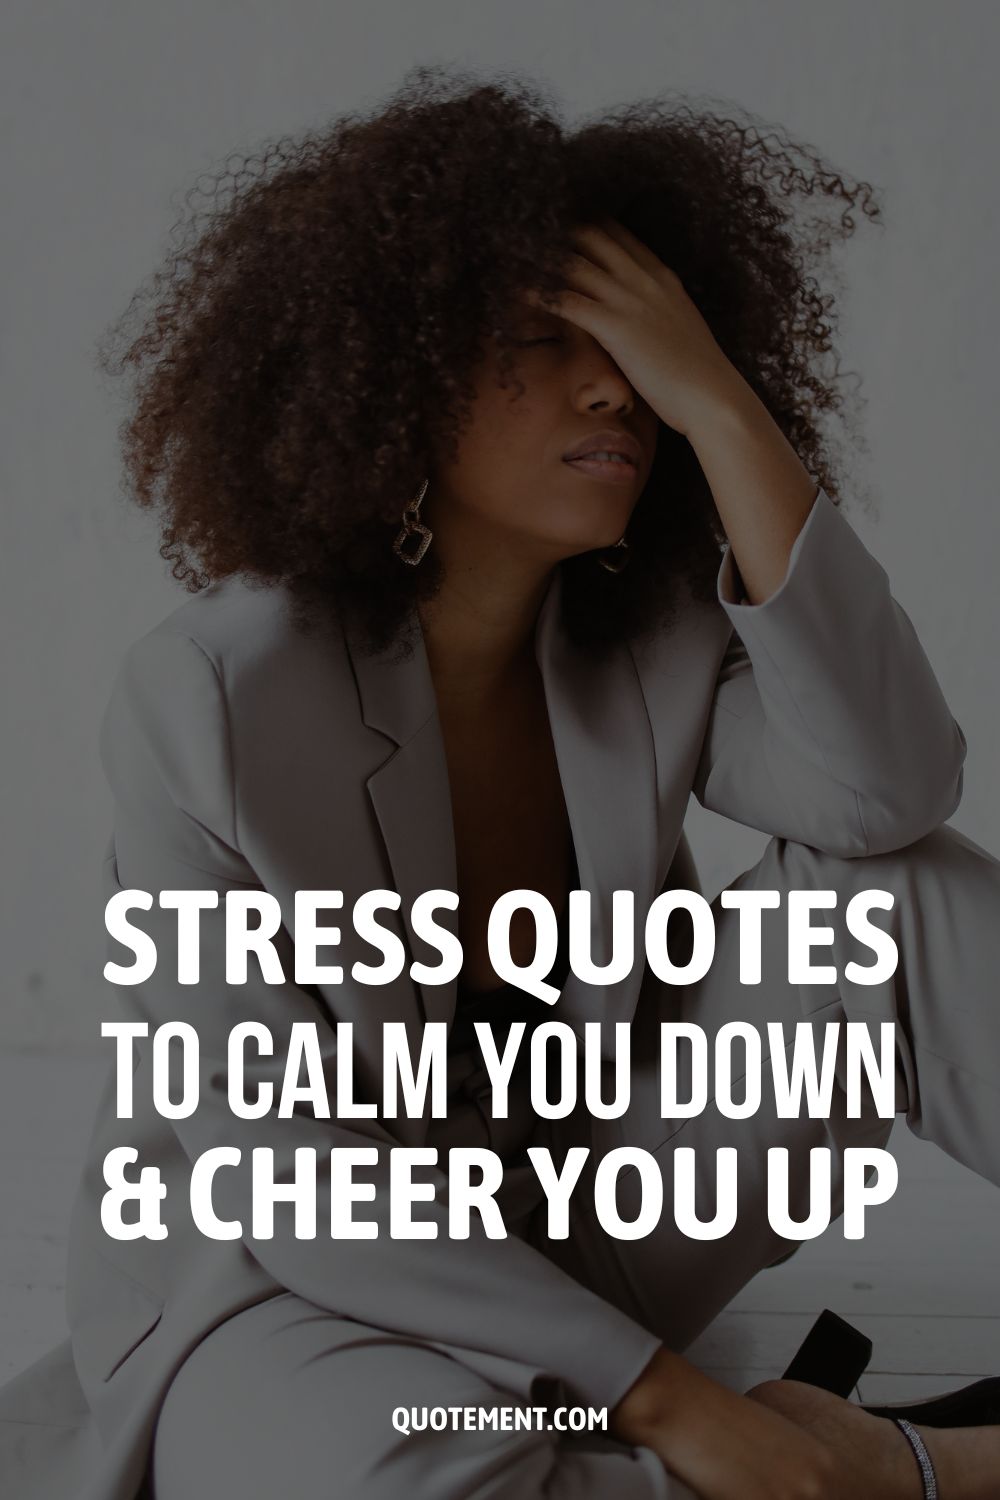 100 frases sobre el estrés para calmarte y animarte